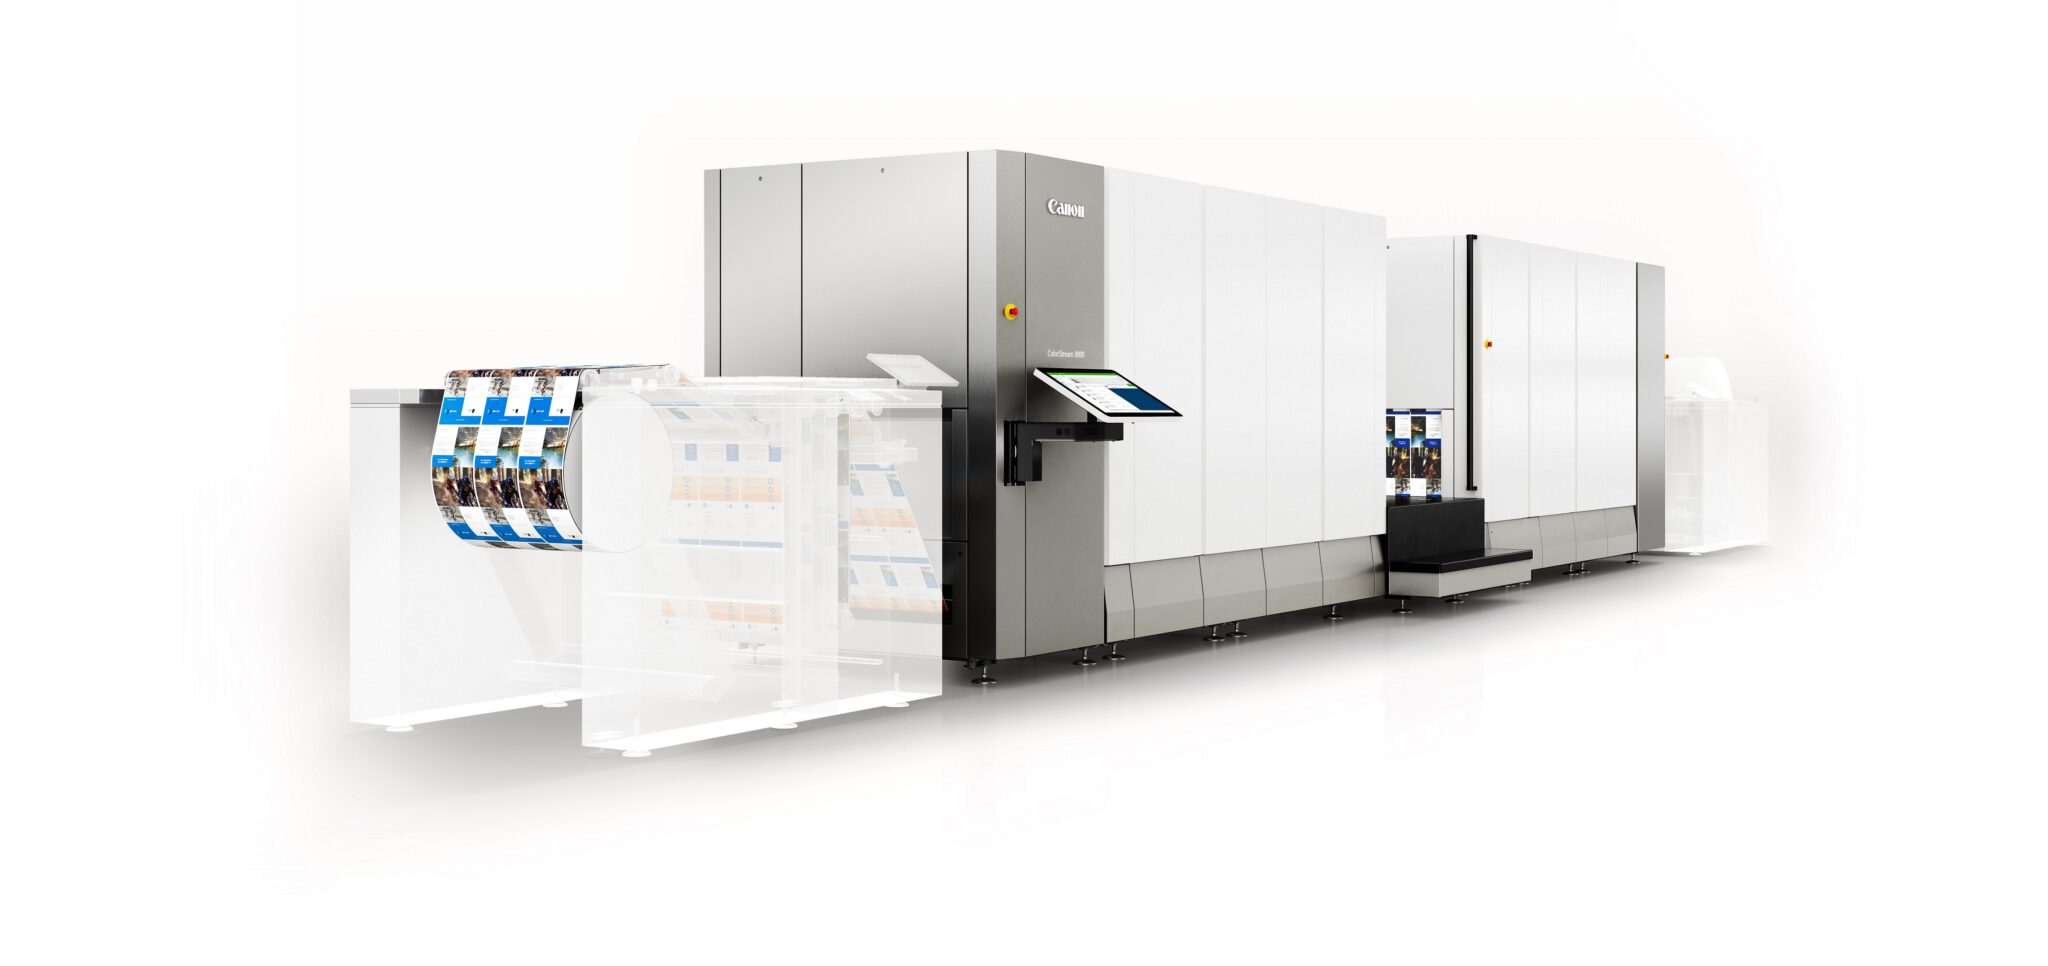 แคนนอน เปิดตัว ColorStream 8000 นวัตกรรมเครื่องพิมพ์ดิจิทัลใหม่ล่าสุด